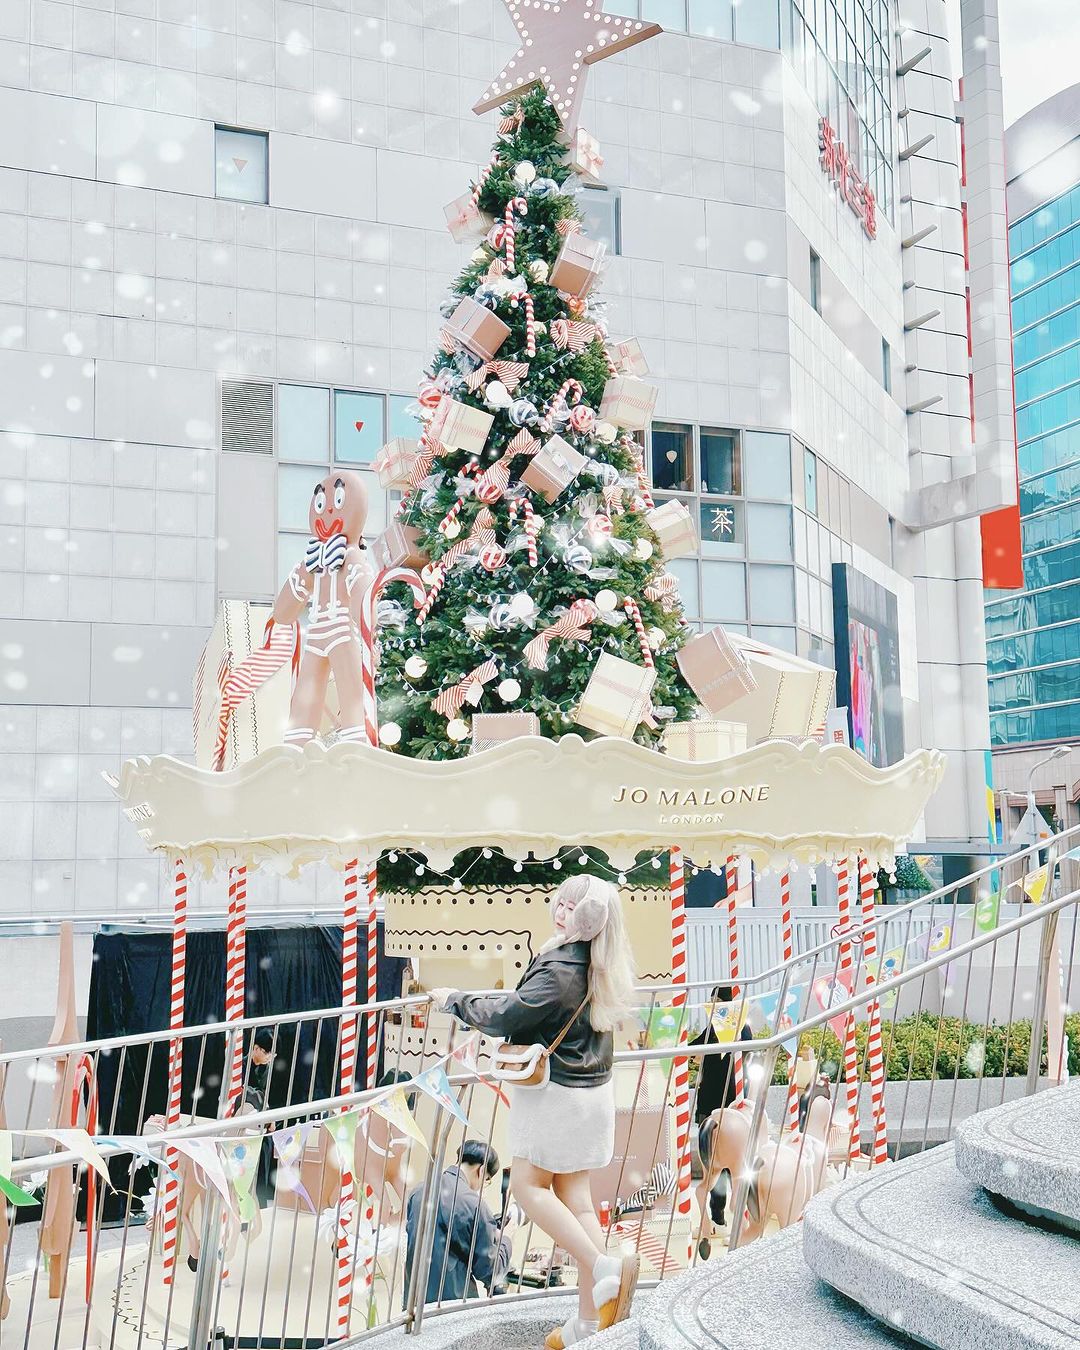 台北市聖誕景點-心中山線形公園 Jomalone 聖誕旋轉木馬